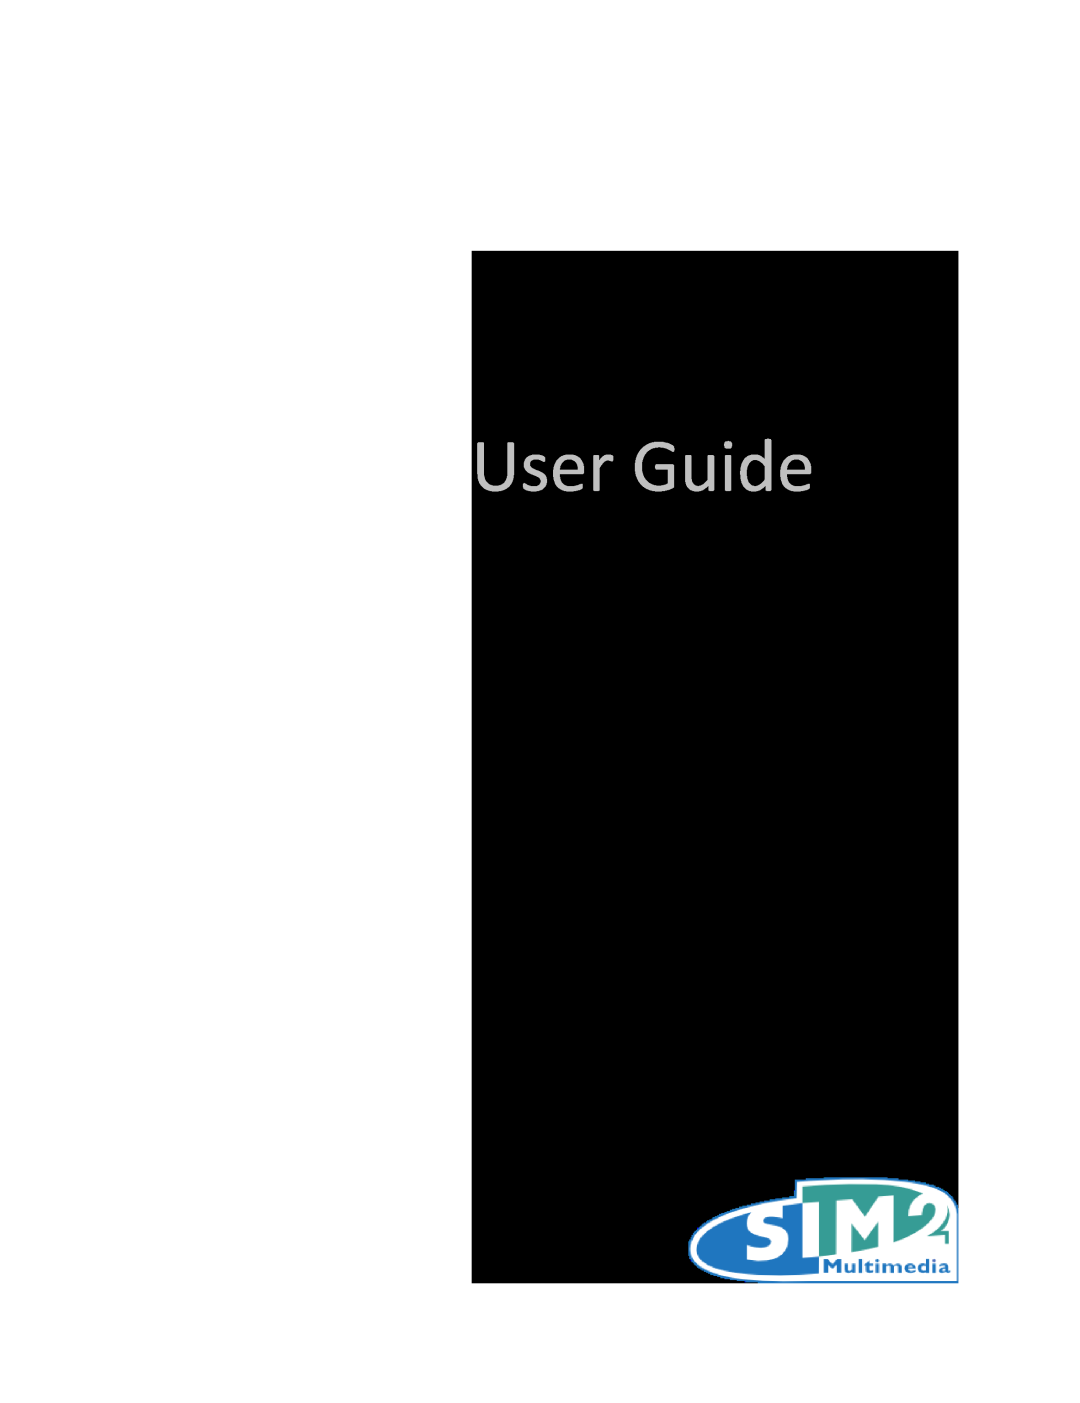 Sim2 Multimedia manual Lumis 3D-S, User Guide, SIM2 Multimedia 